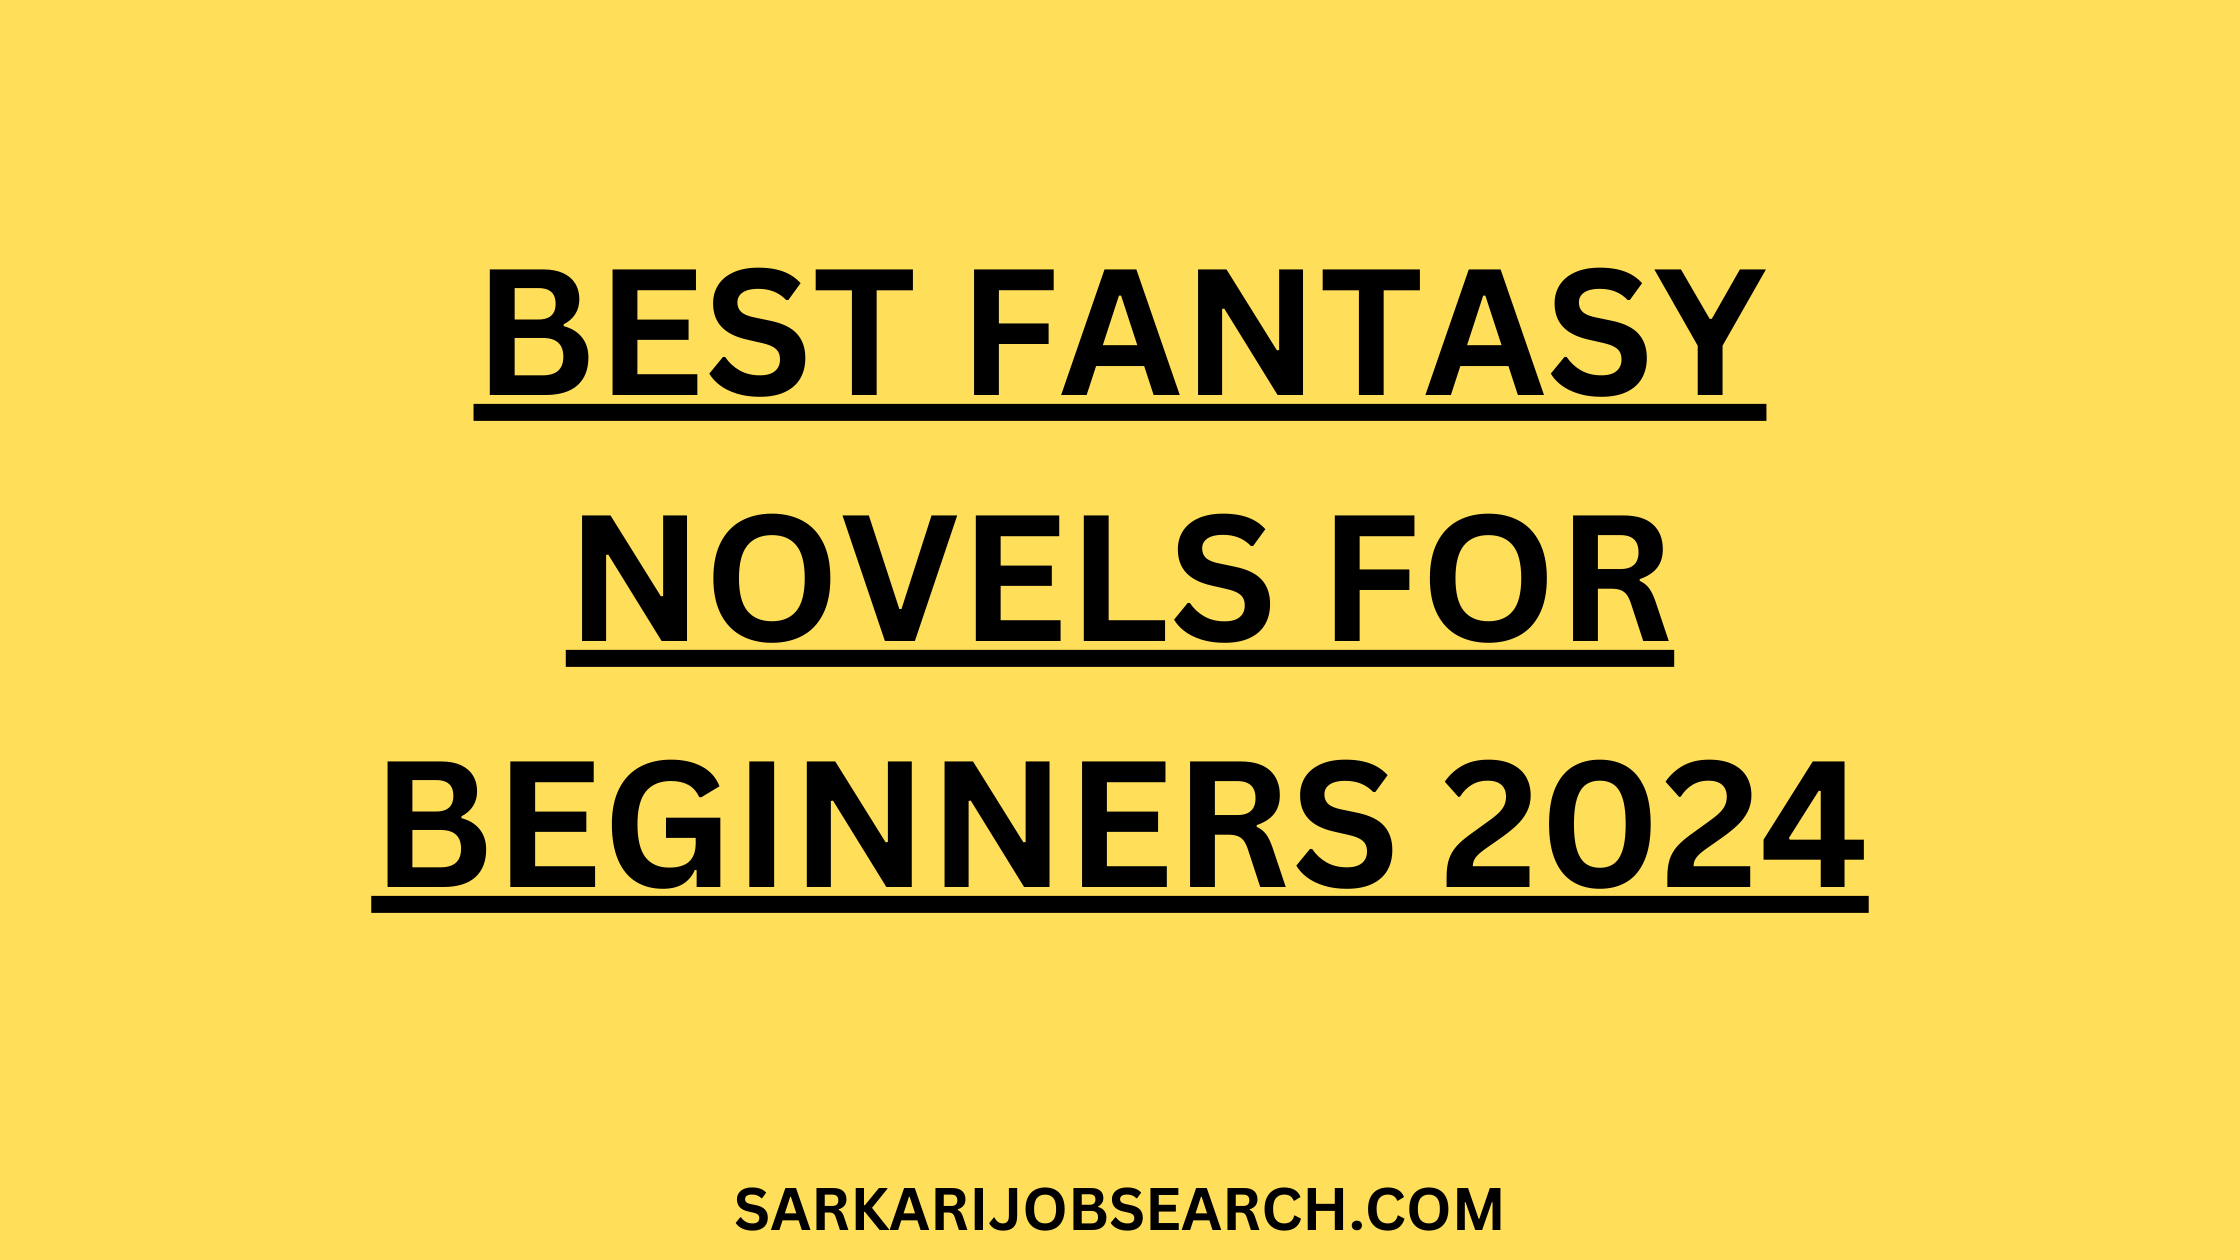 Best Fantasy Novels For Beginners 2024